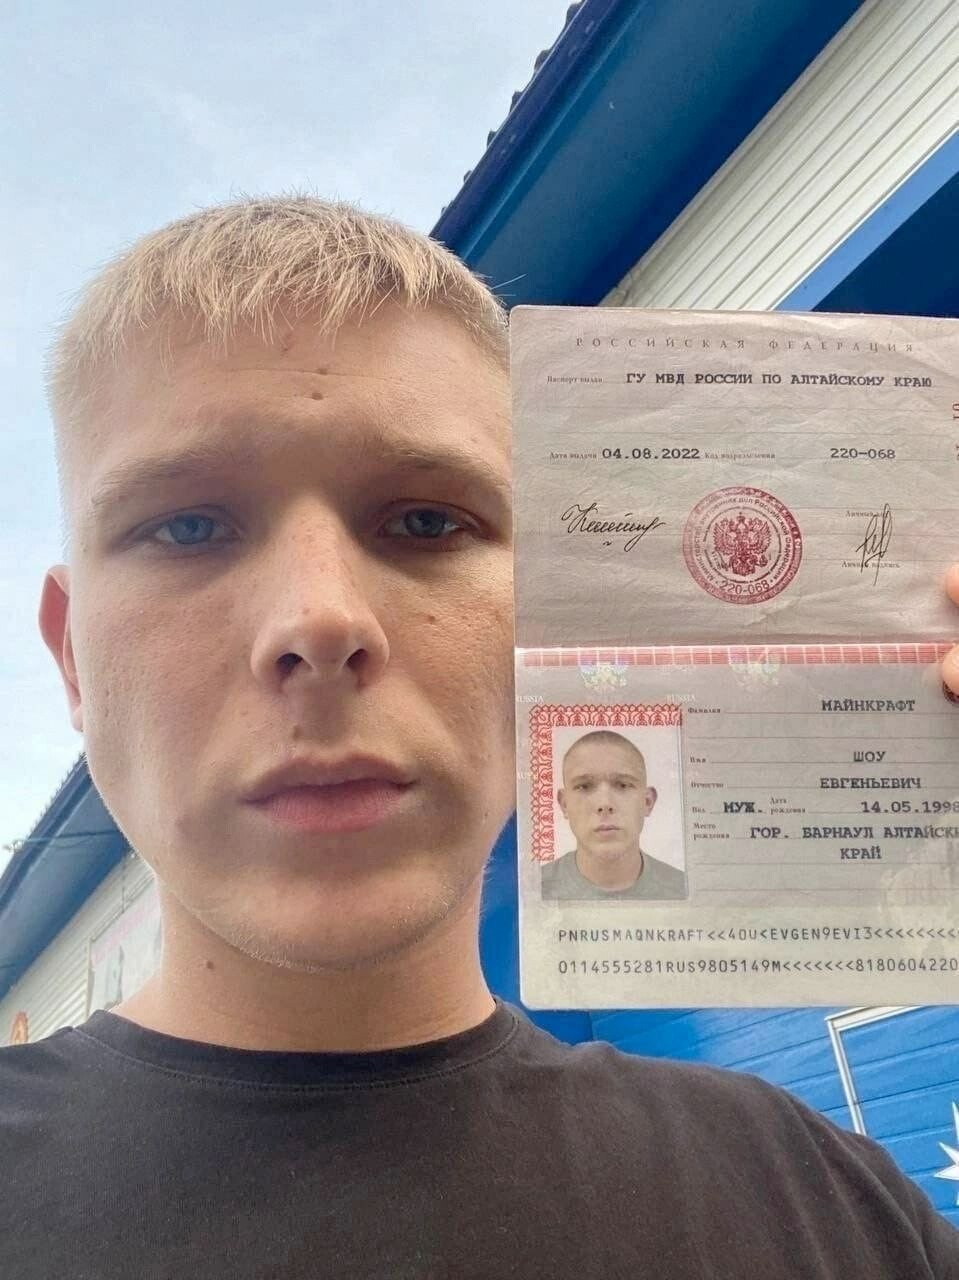 Найден российский паспорт